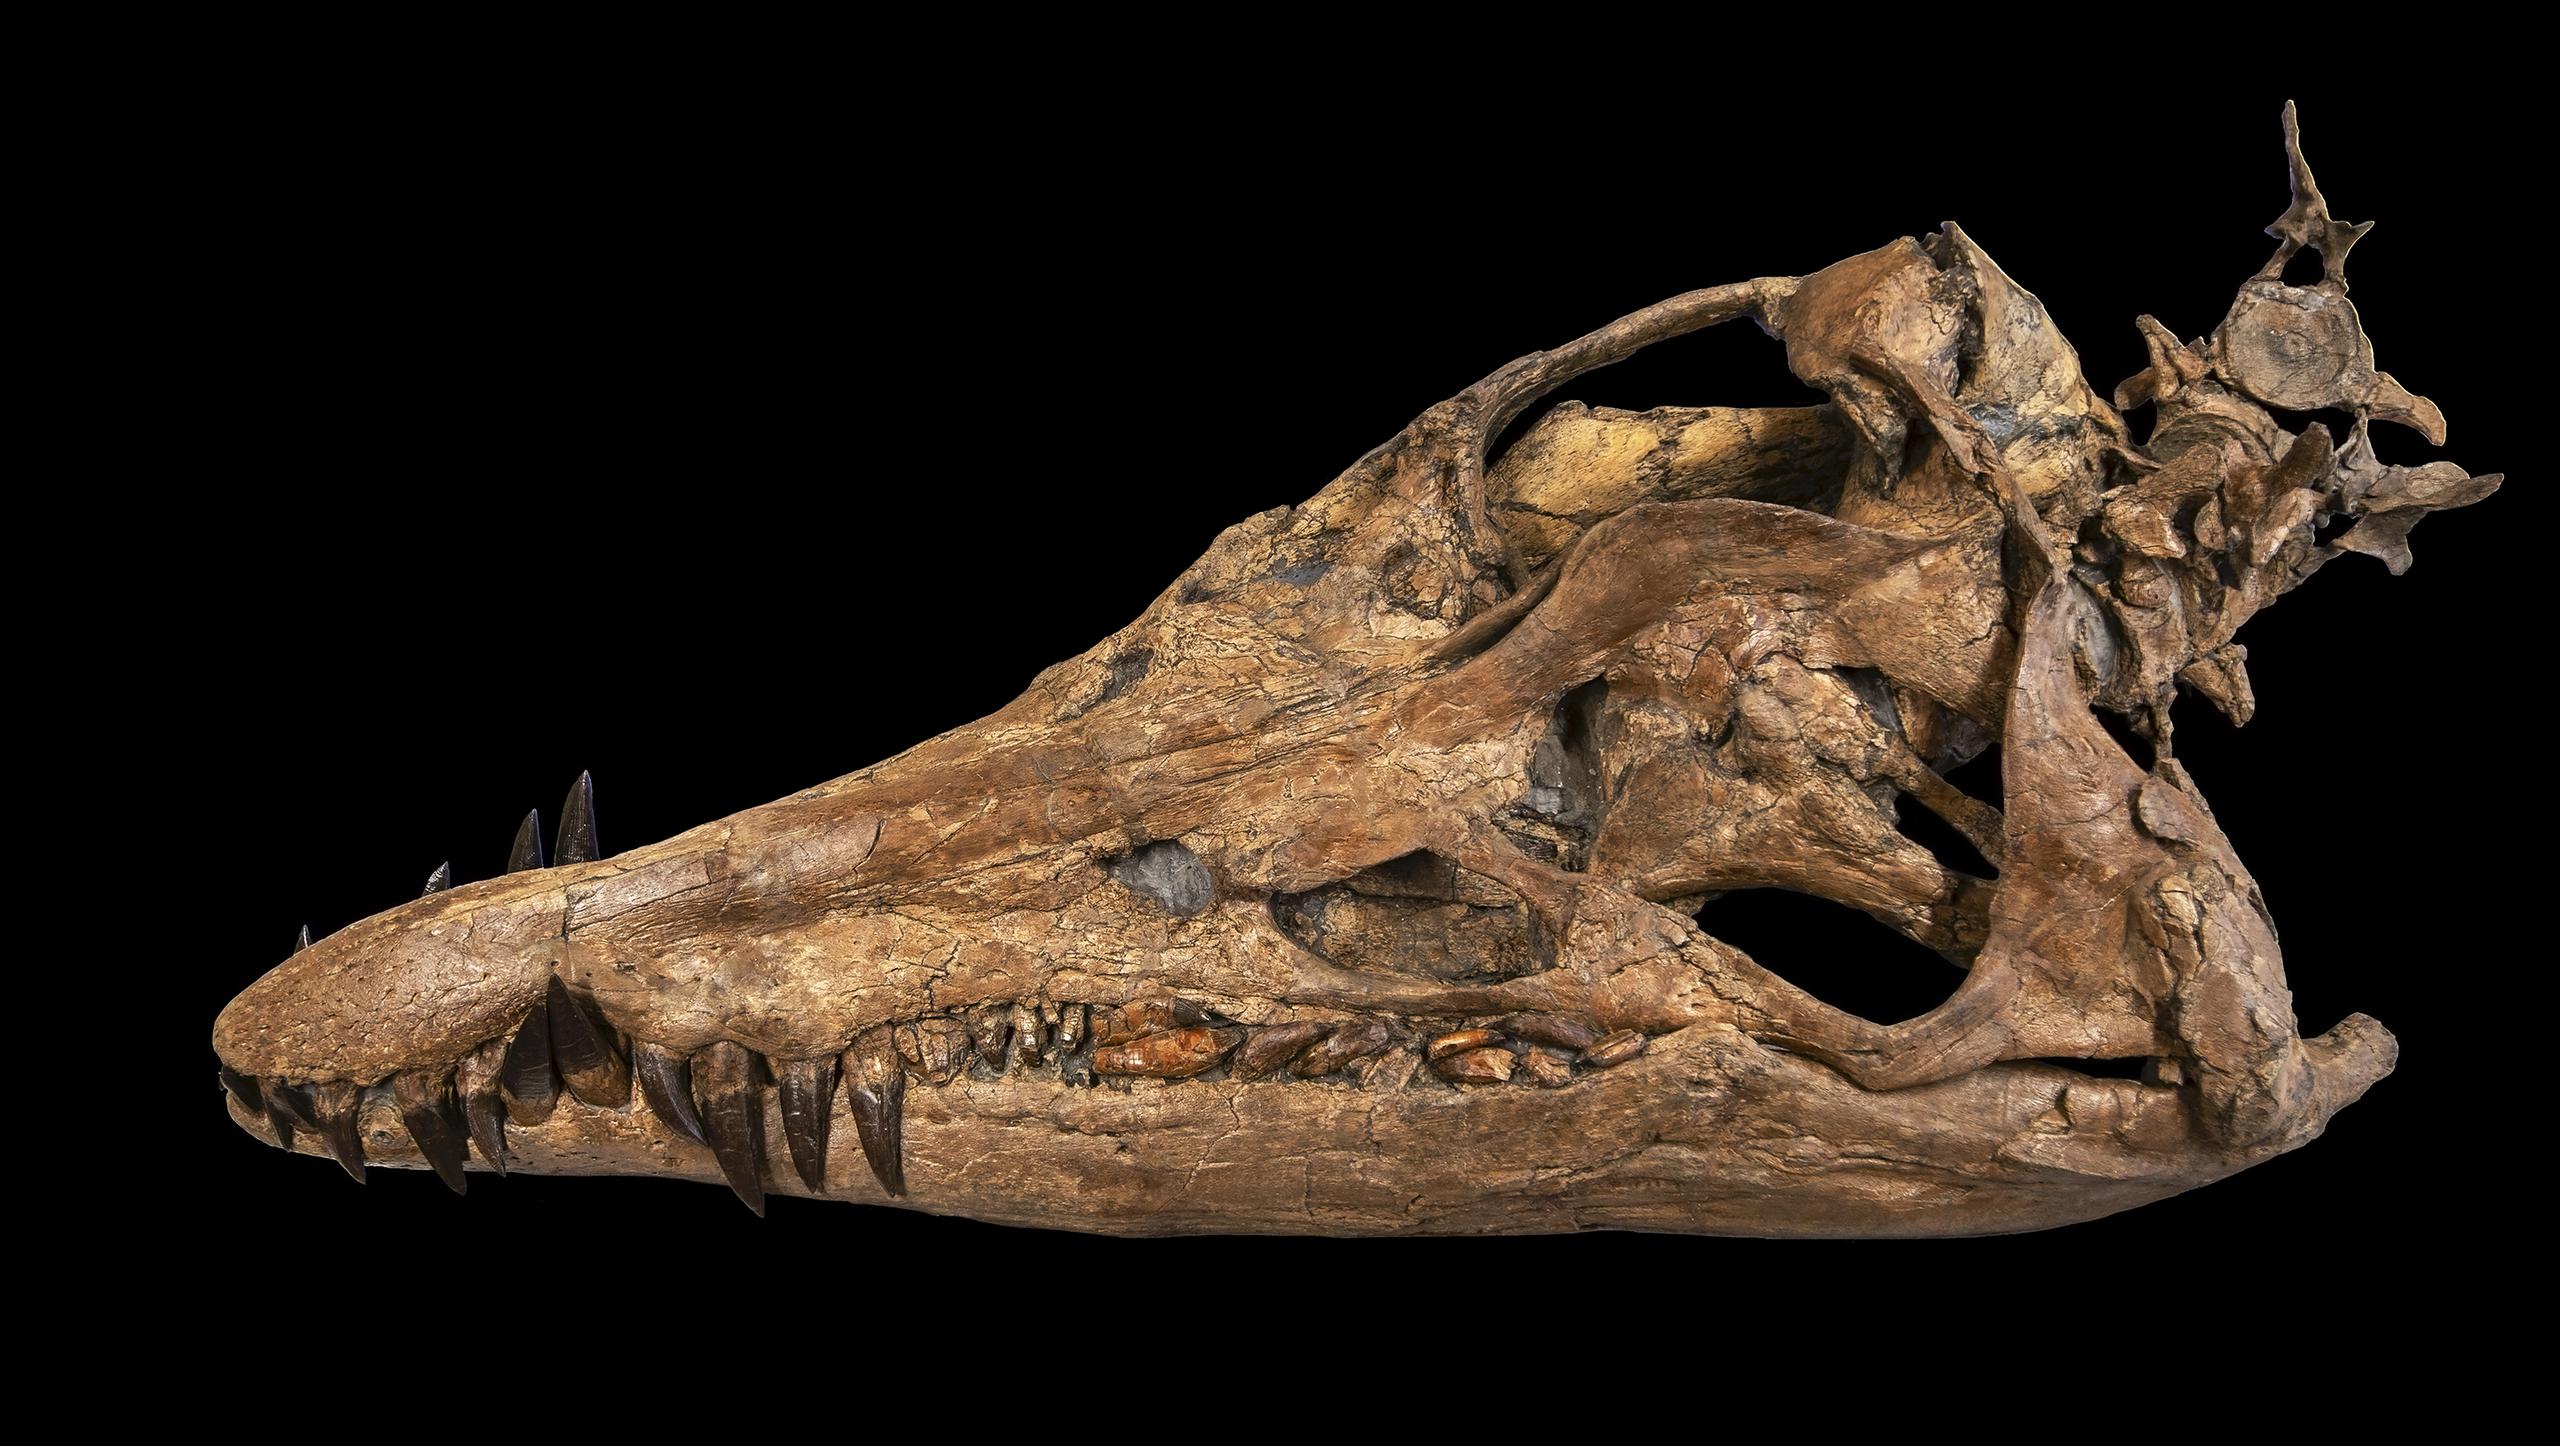 Los restos de este pliosaurio fueron hallados de manera fortuita por Phil Jacobs, durante un paseo por una playa de la localidad de Kimmeridge, en Dorset.